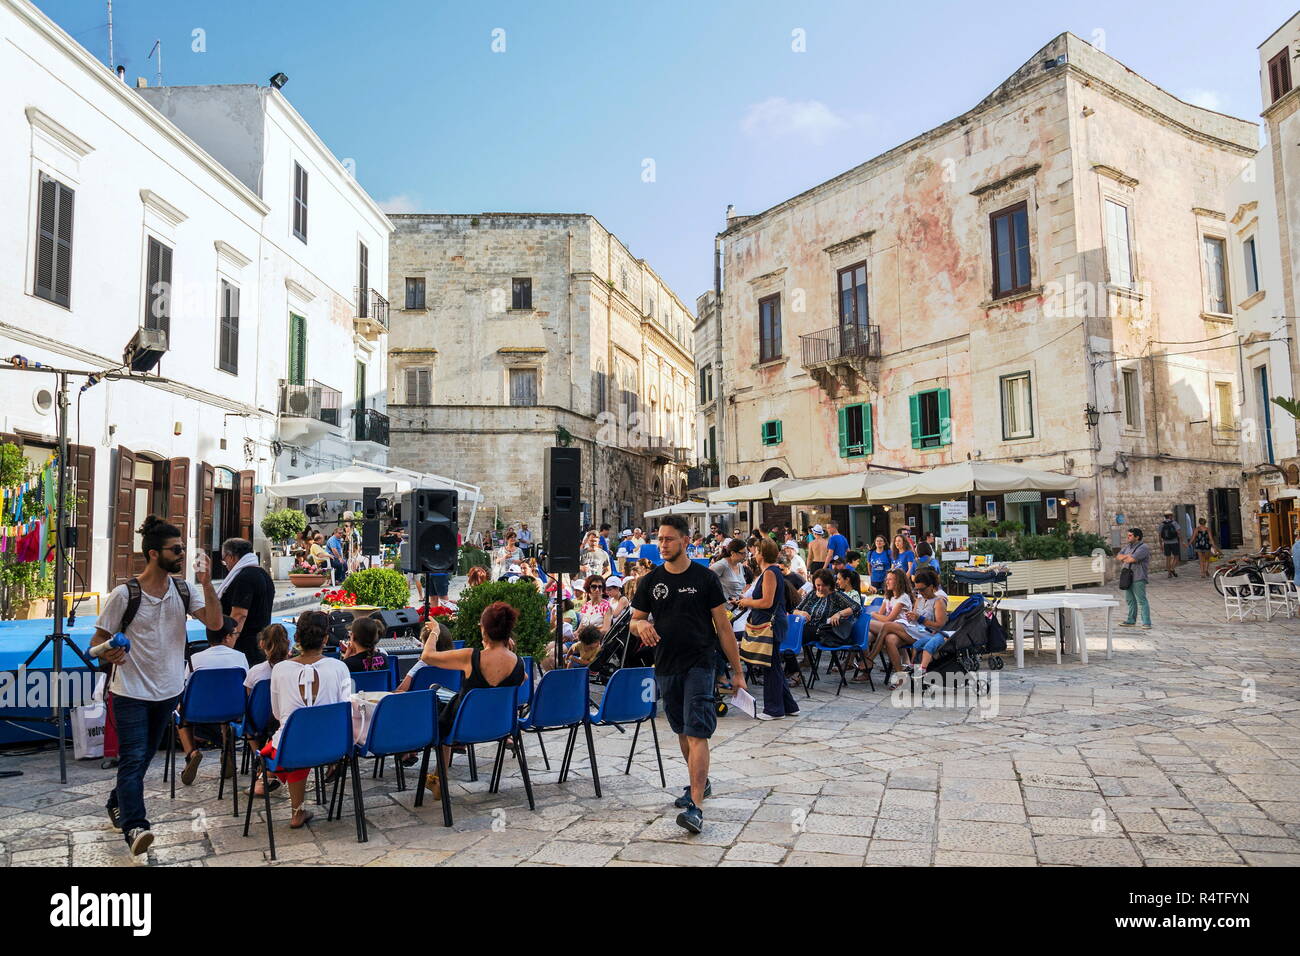 POLIGNANO A Mare, Italia - 6 Julio 2018: turistas que caminan en el centro histórico el 6 de julio de 2018, en Polignano a Mare, Italia. Foto de stock